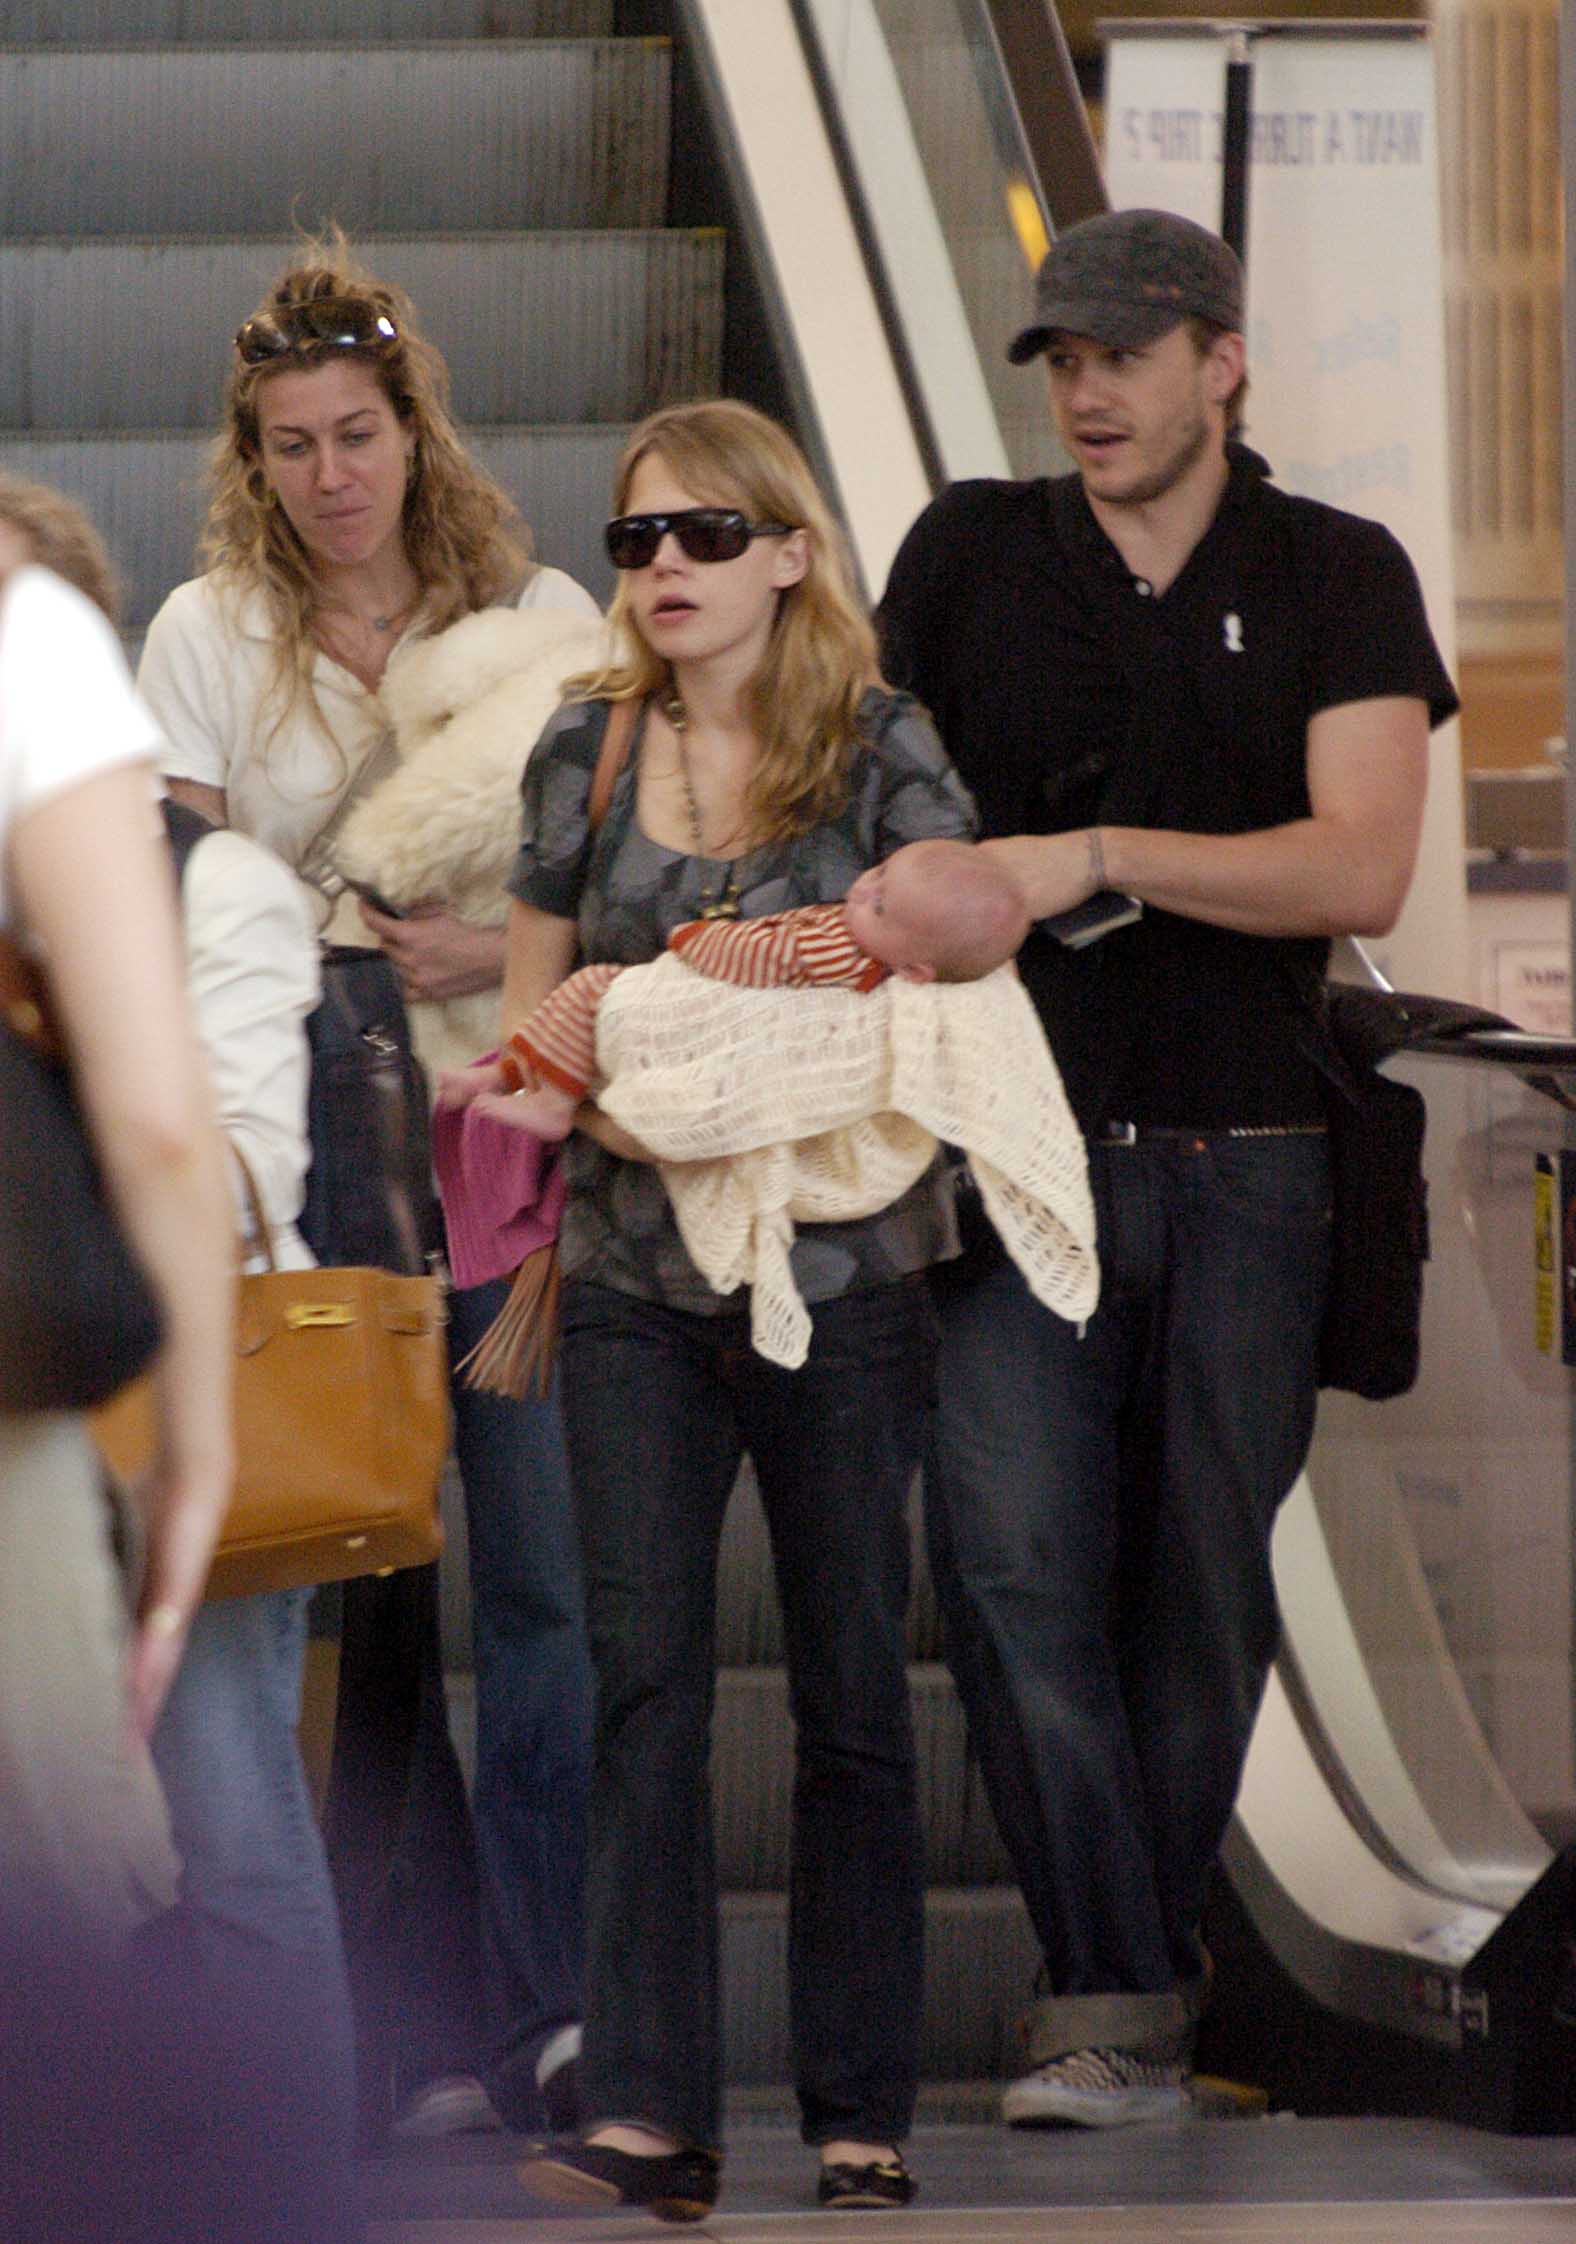 El actor, su esposa y su hija salen del Aeropuerto Internacional de Sidney hacia su casa de Nueva York el 14 de enero de 2006 en Sidney, Australia | Foto: Getty Images